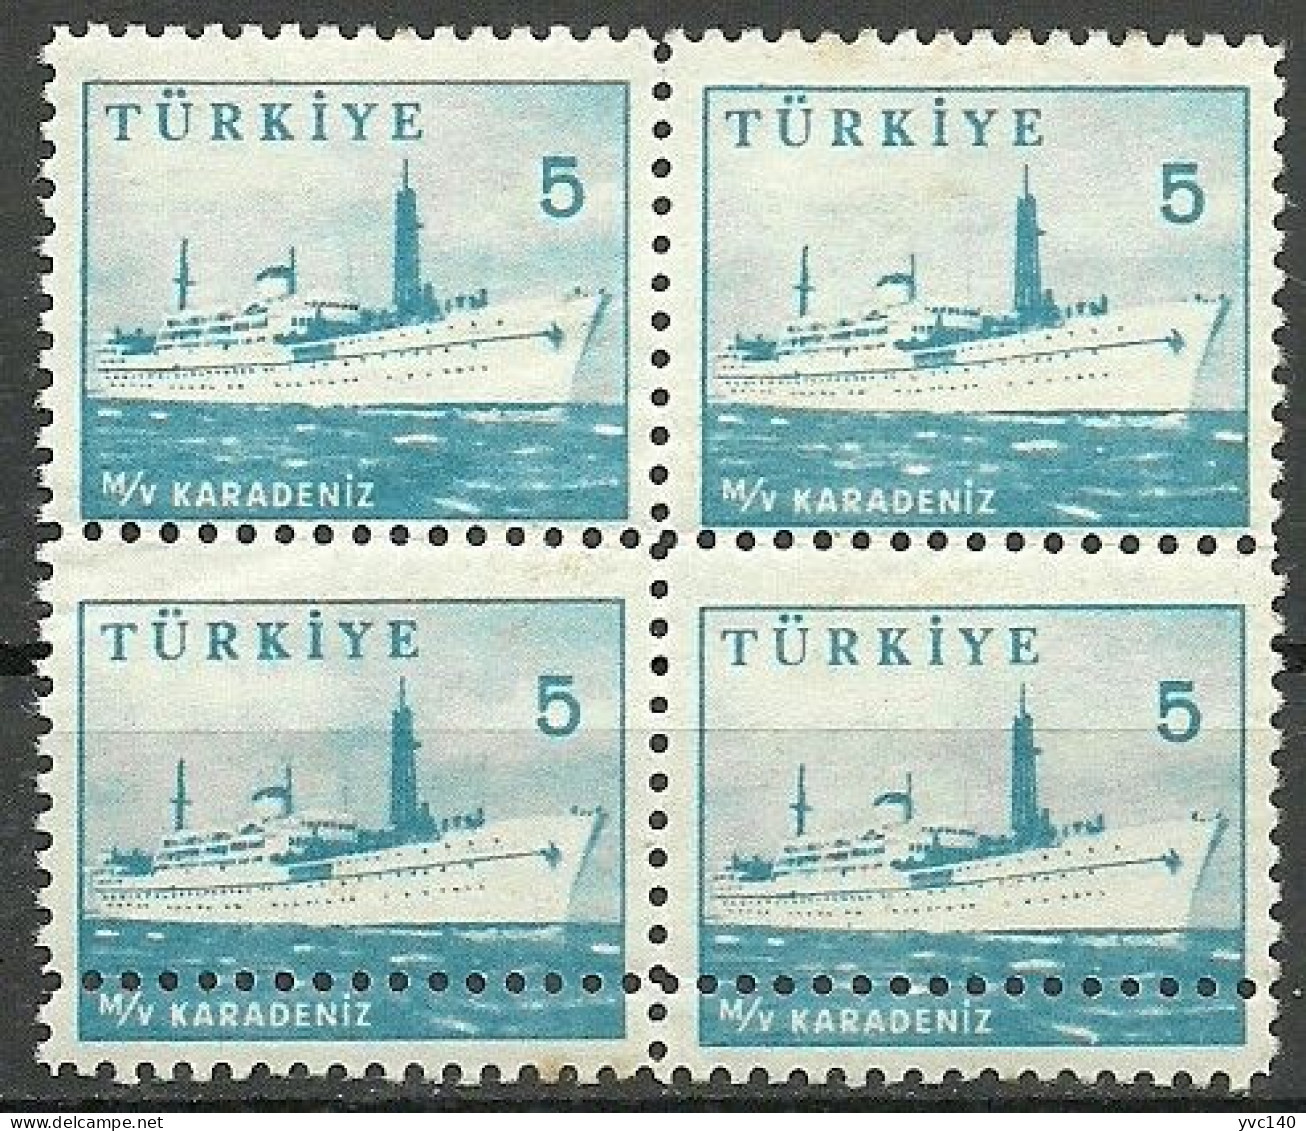 Turkey; 1959 Pictorial Postage Stamp 5 K. ERROR "Doouuble Perf." - Ungebraucht